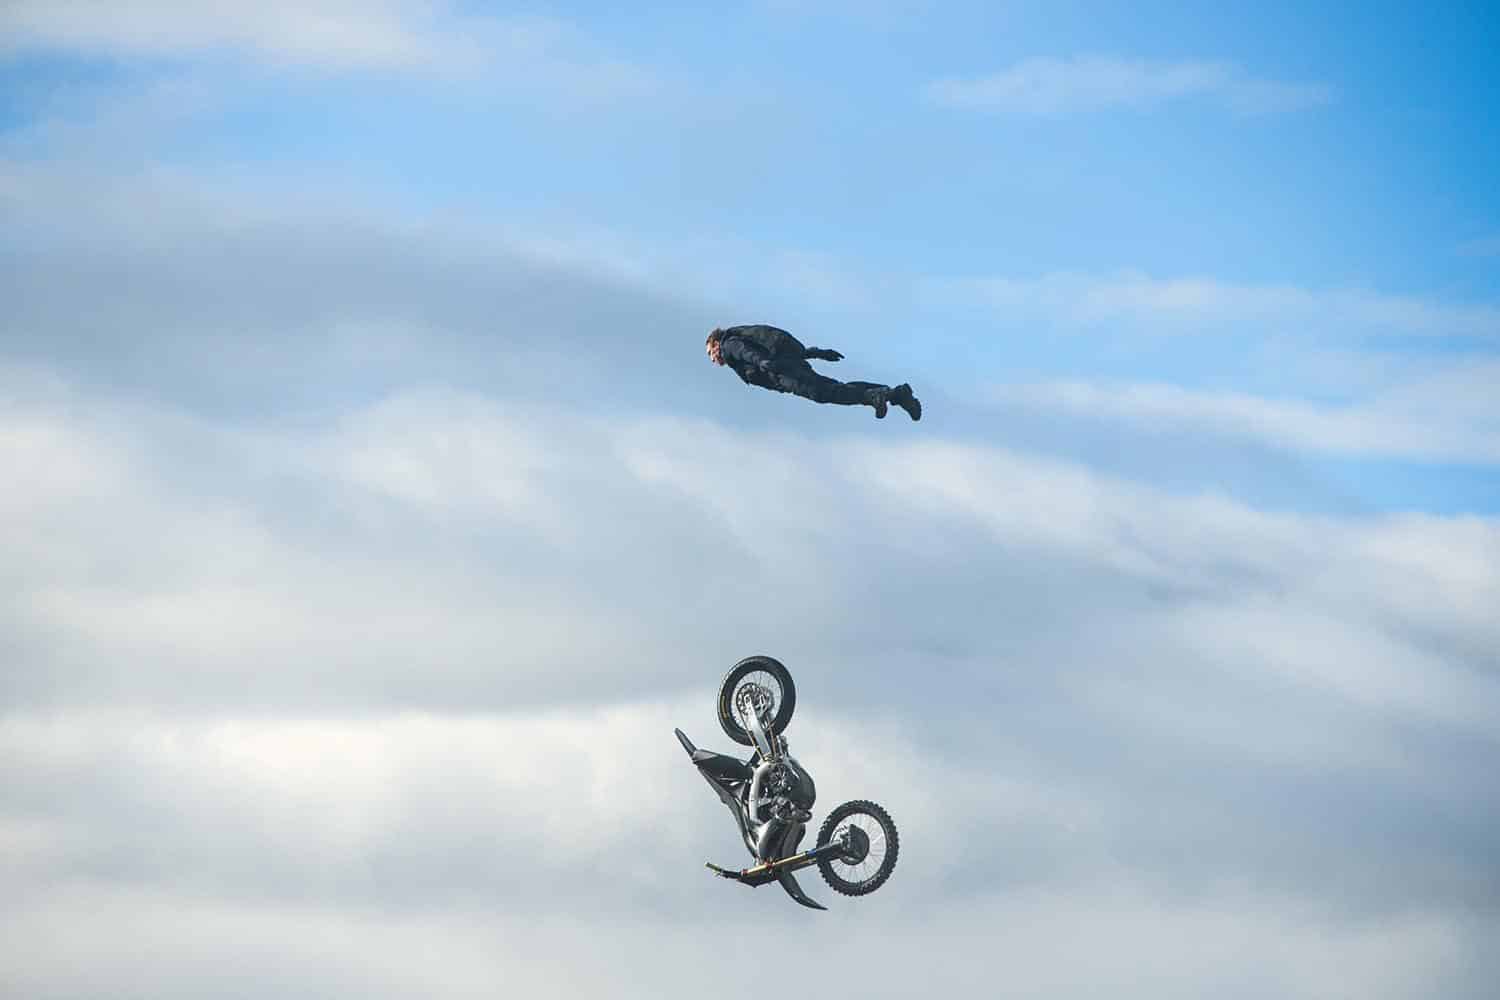 La imagen del salto en moto de Tom Cruise es espectacular